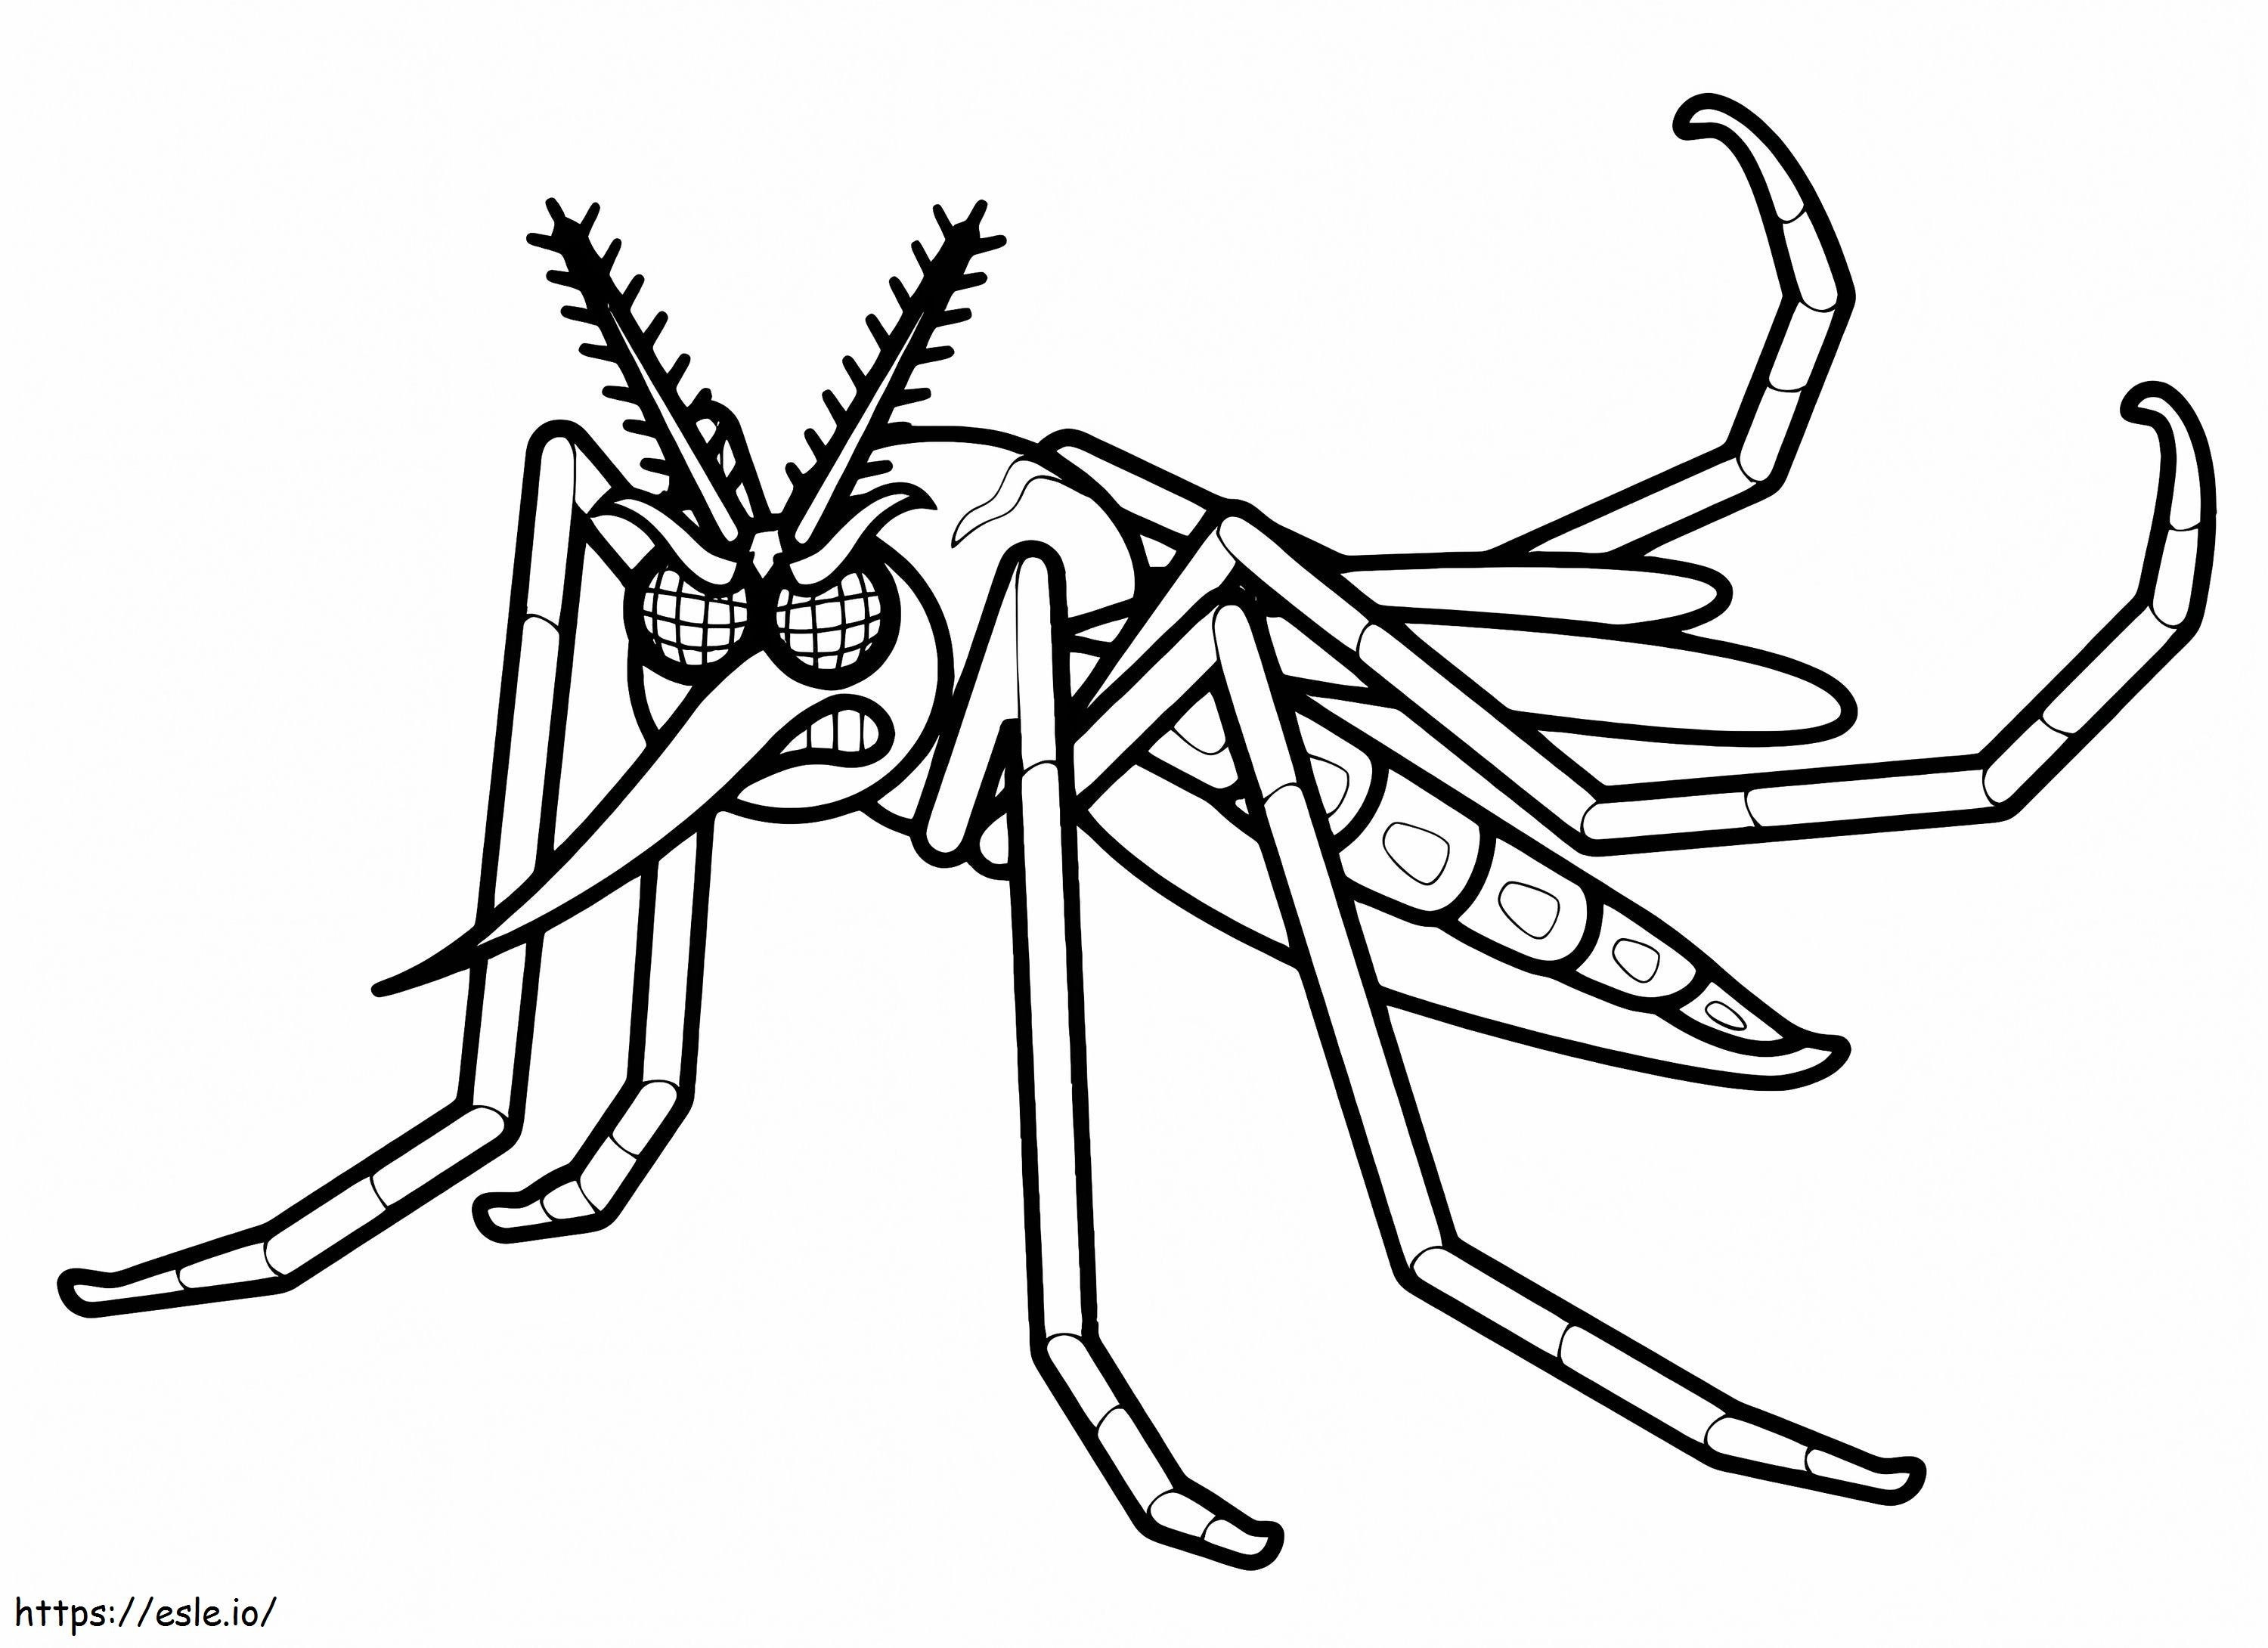 Wütende Mücke ausmalbilder